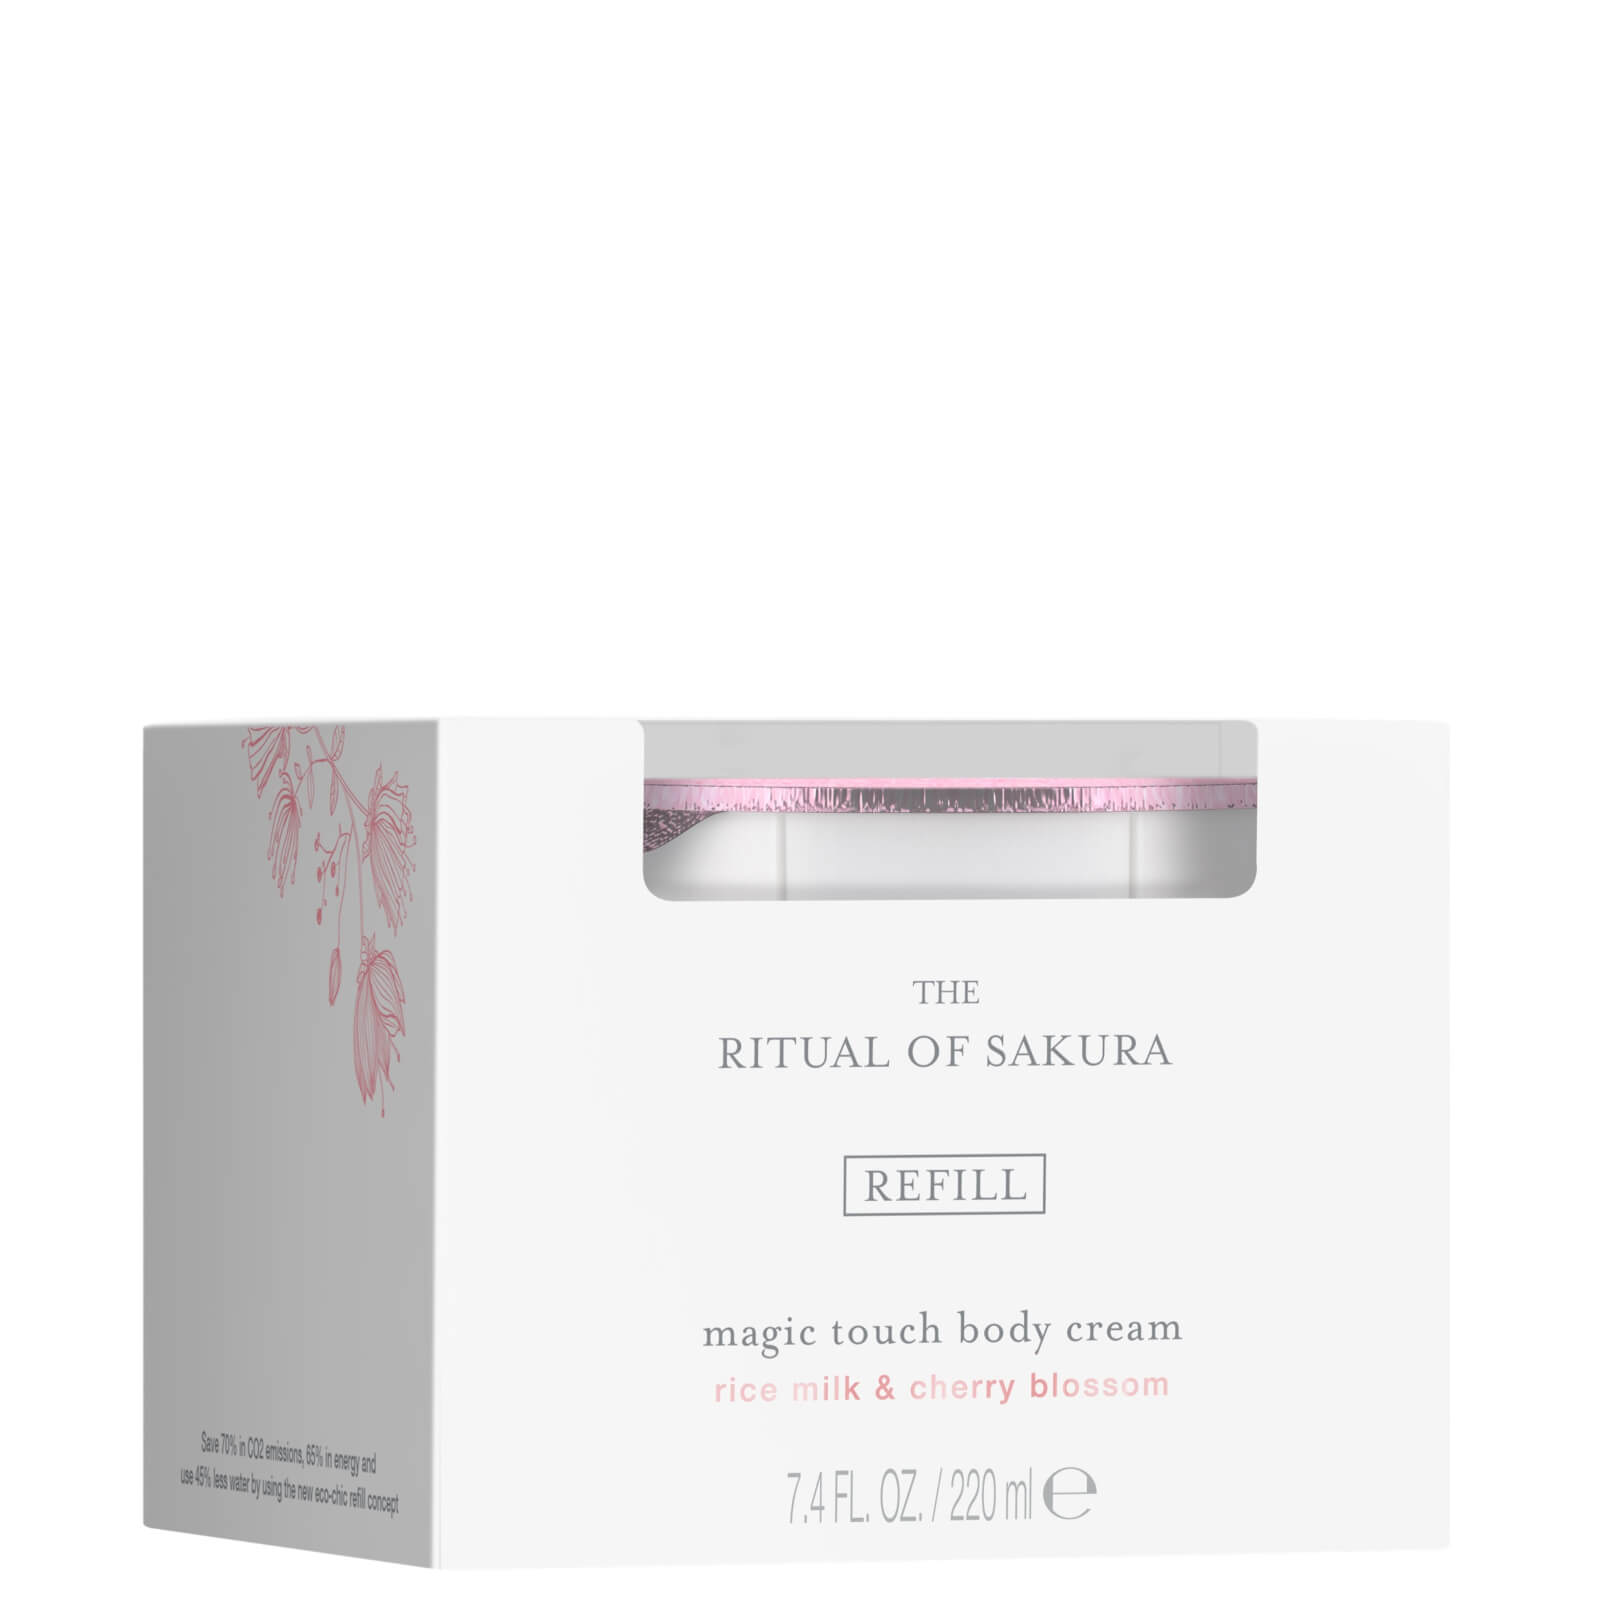 RITUALS The Ritual of Sakura Refill Body Cream, ricarica per crema corpo 220 ml